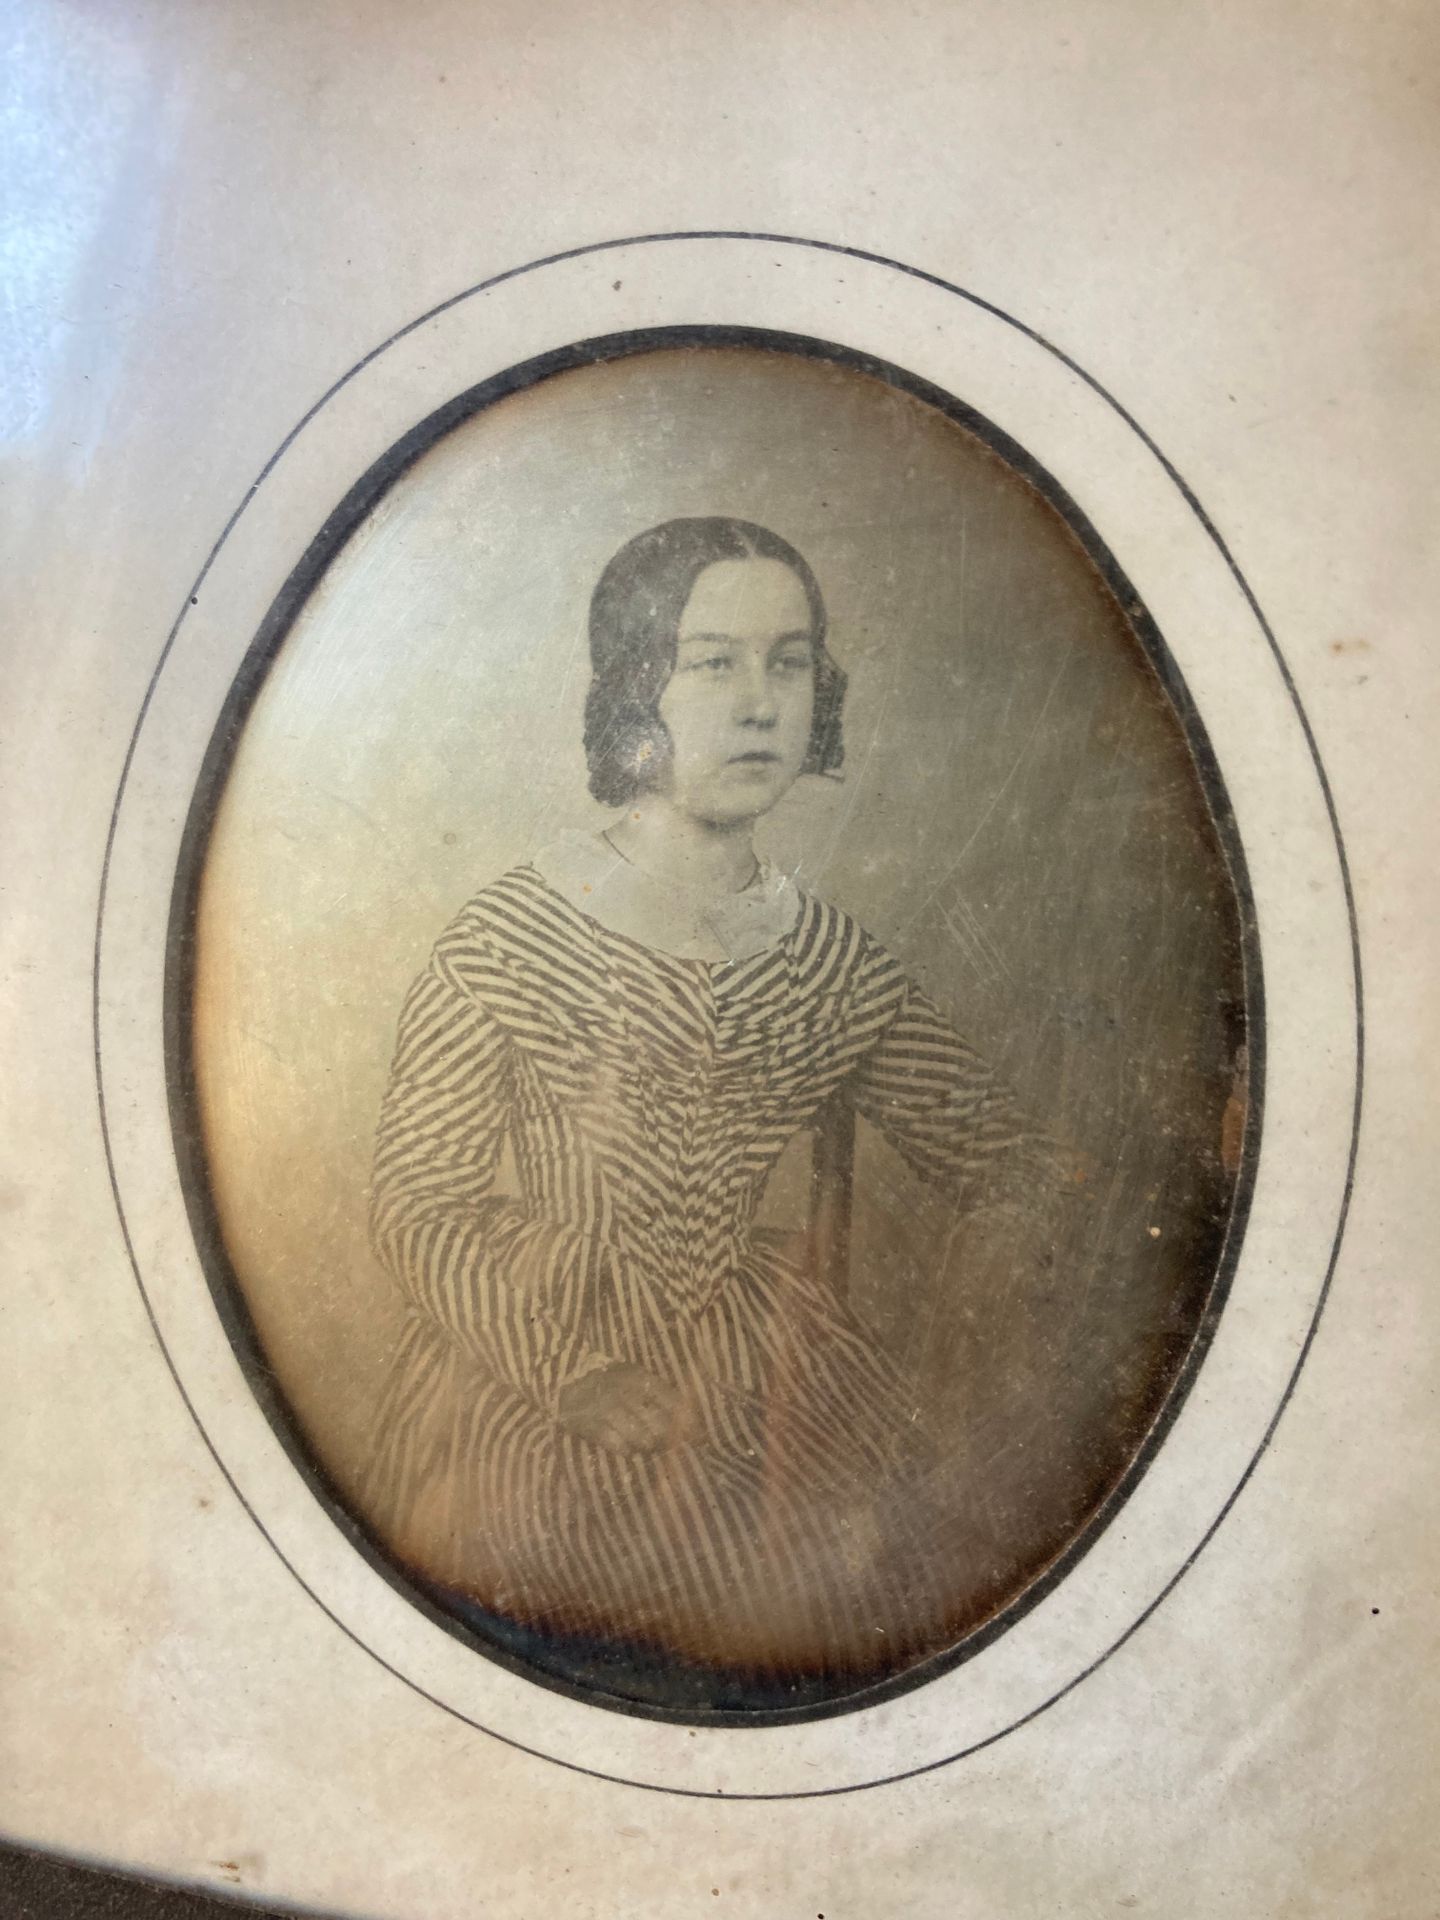 DAGUERREOTYPE Daguerreotypie, 19. Jahrhundert.

Sitzende Frau in einem gestreift&hellip;